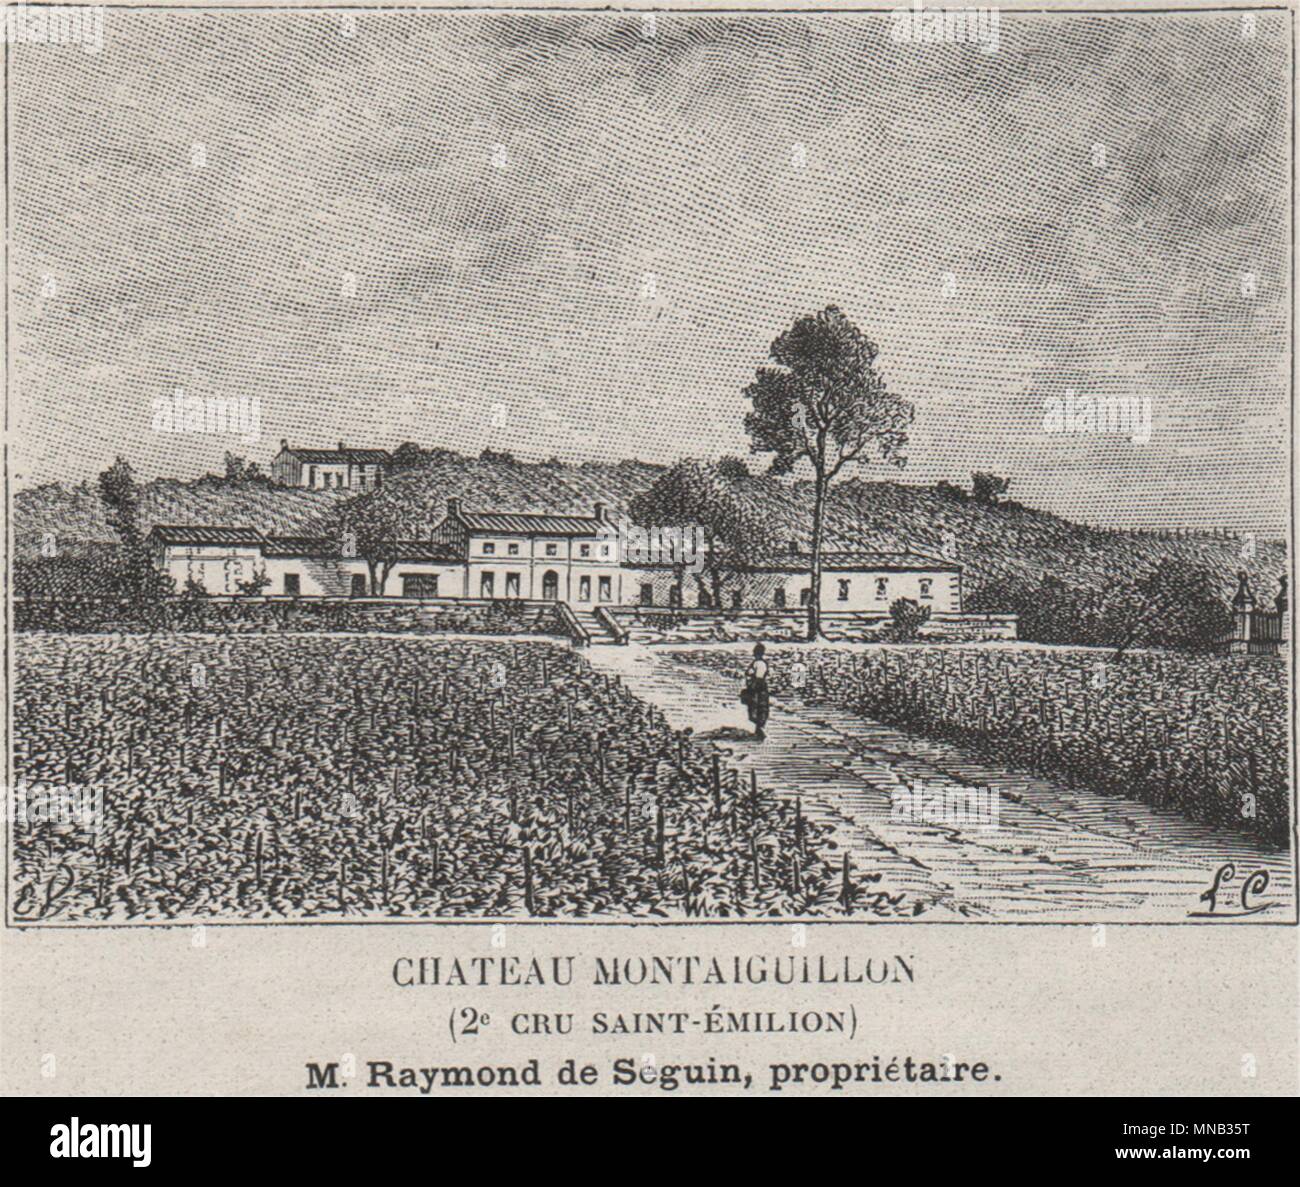 MONTAGNE. Chateau Montaiguillon (2e Cru Saint-Émilion). Bordeaux. SMALL 1908 Stock Photo